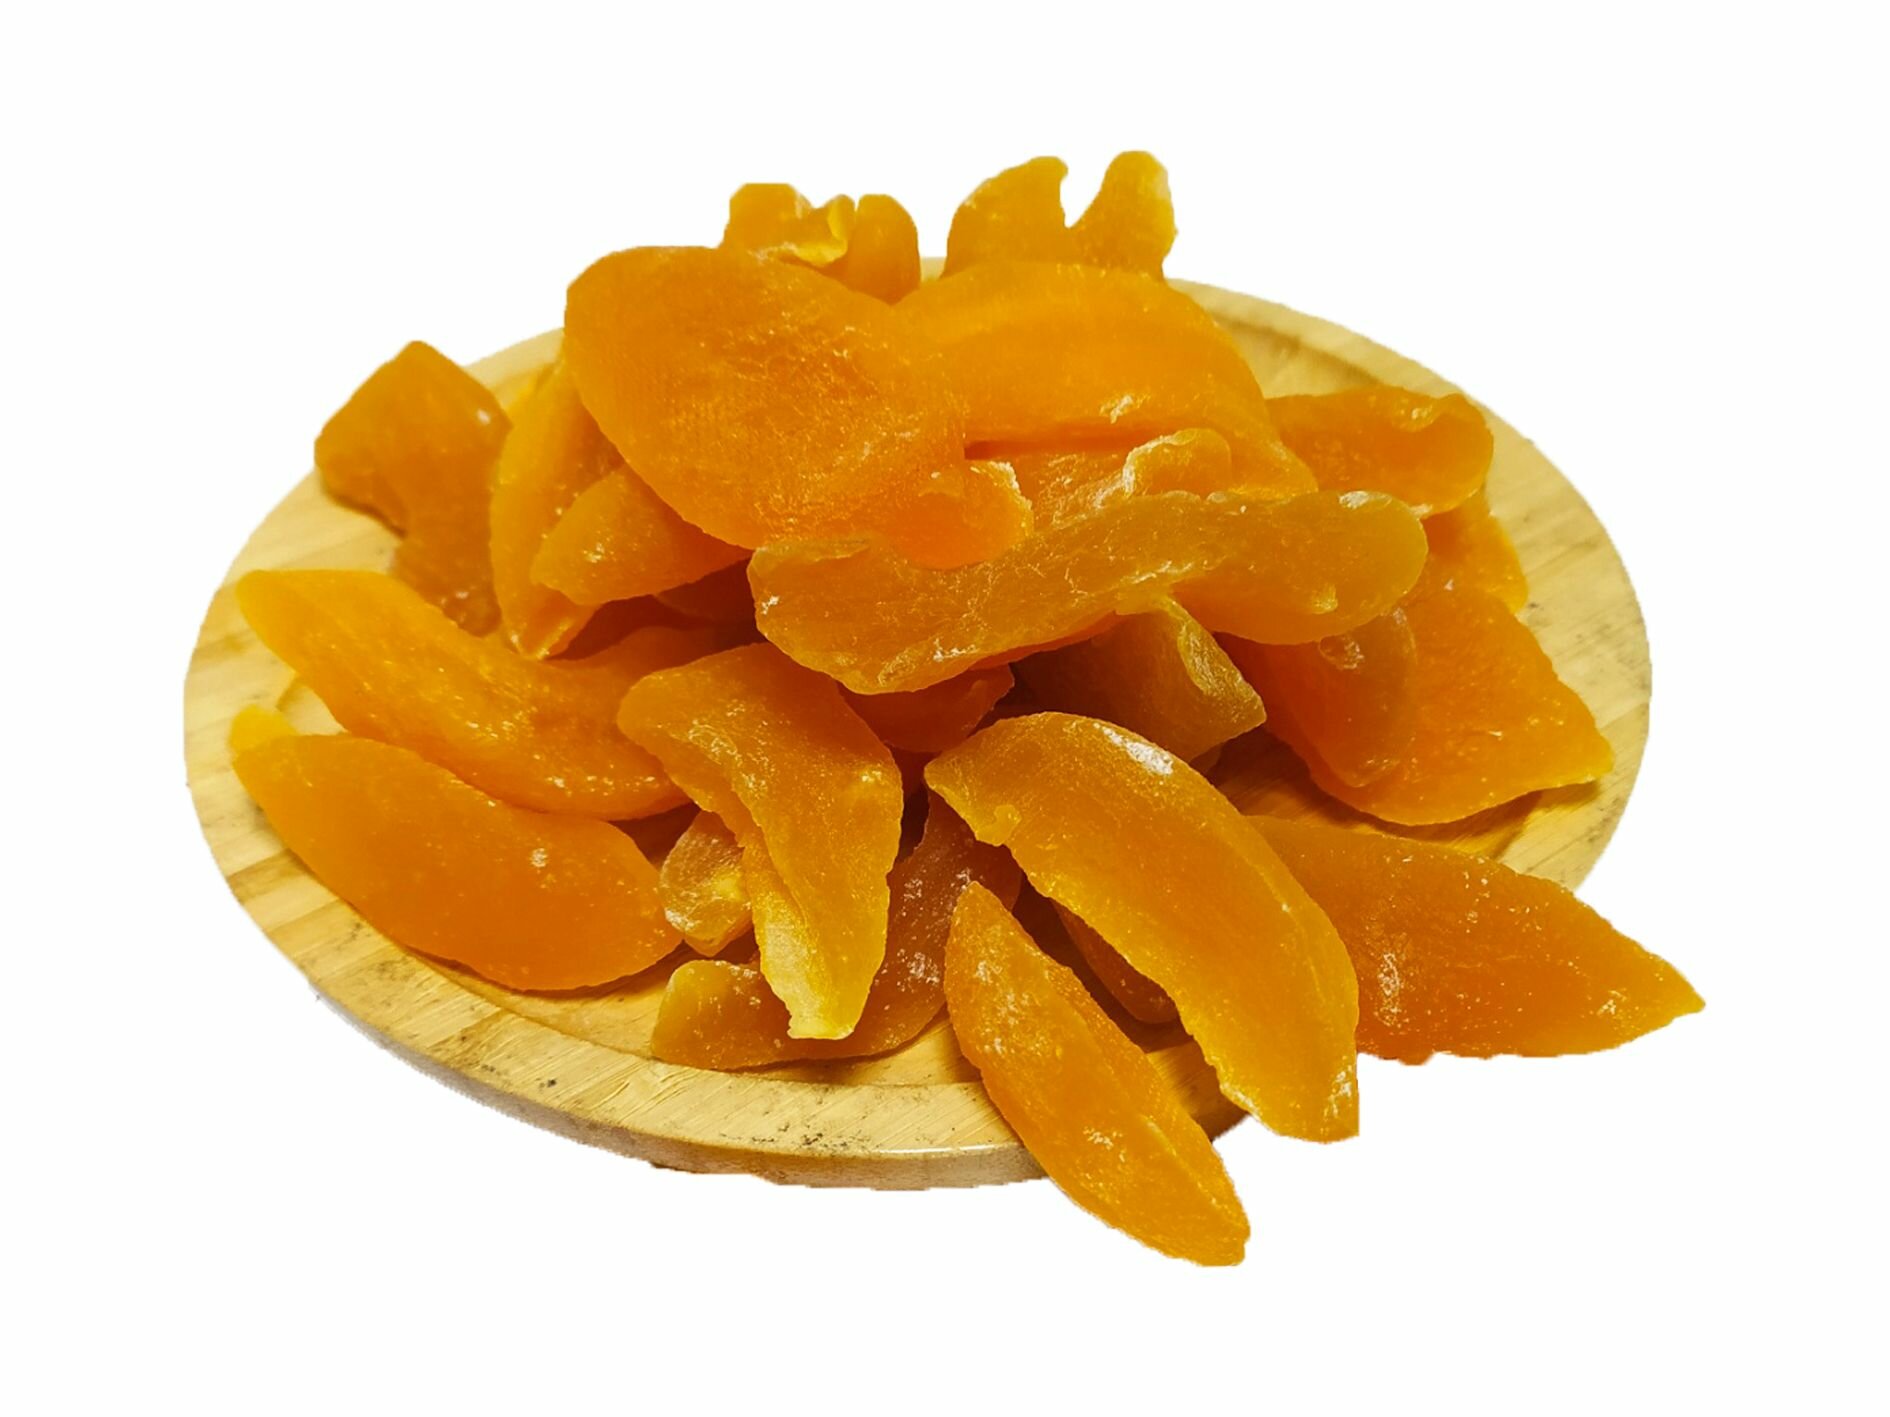 Персик сушеный цукат 500 гр , 0.5 кг